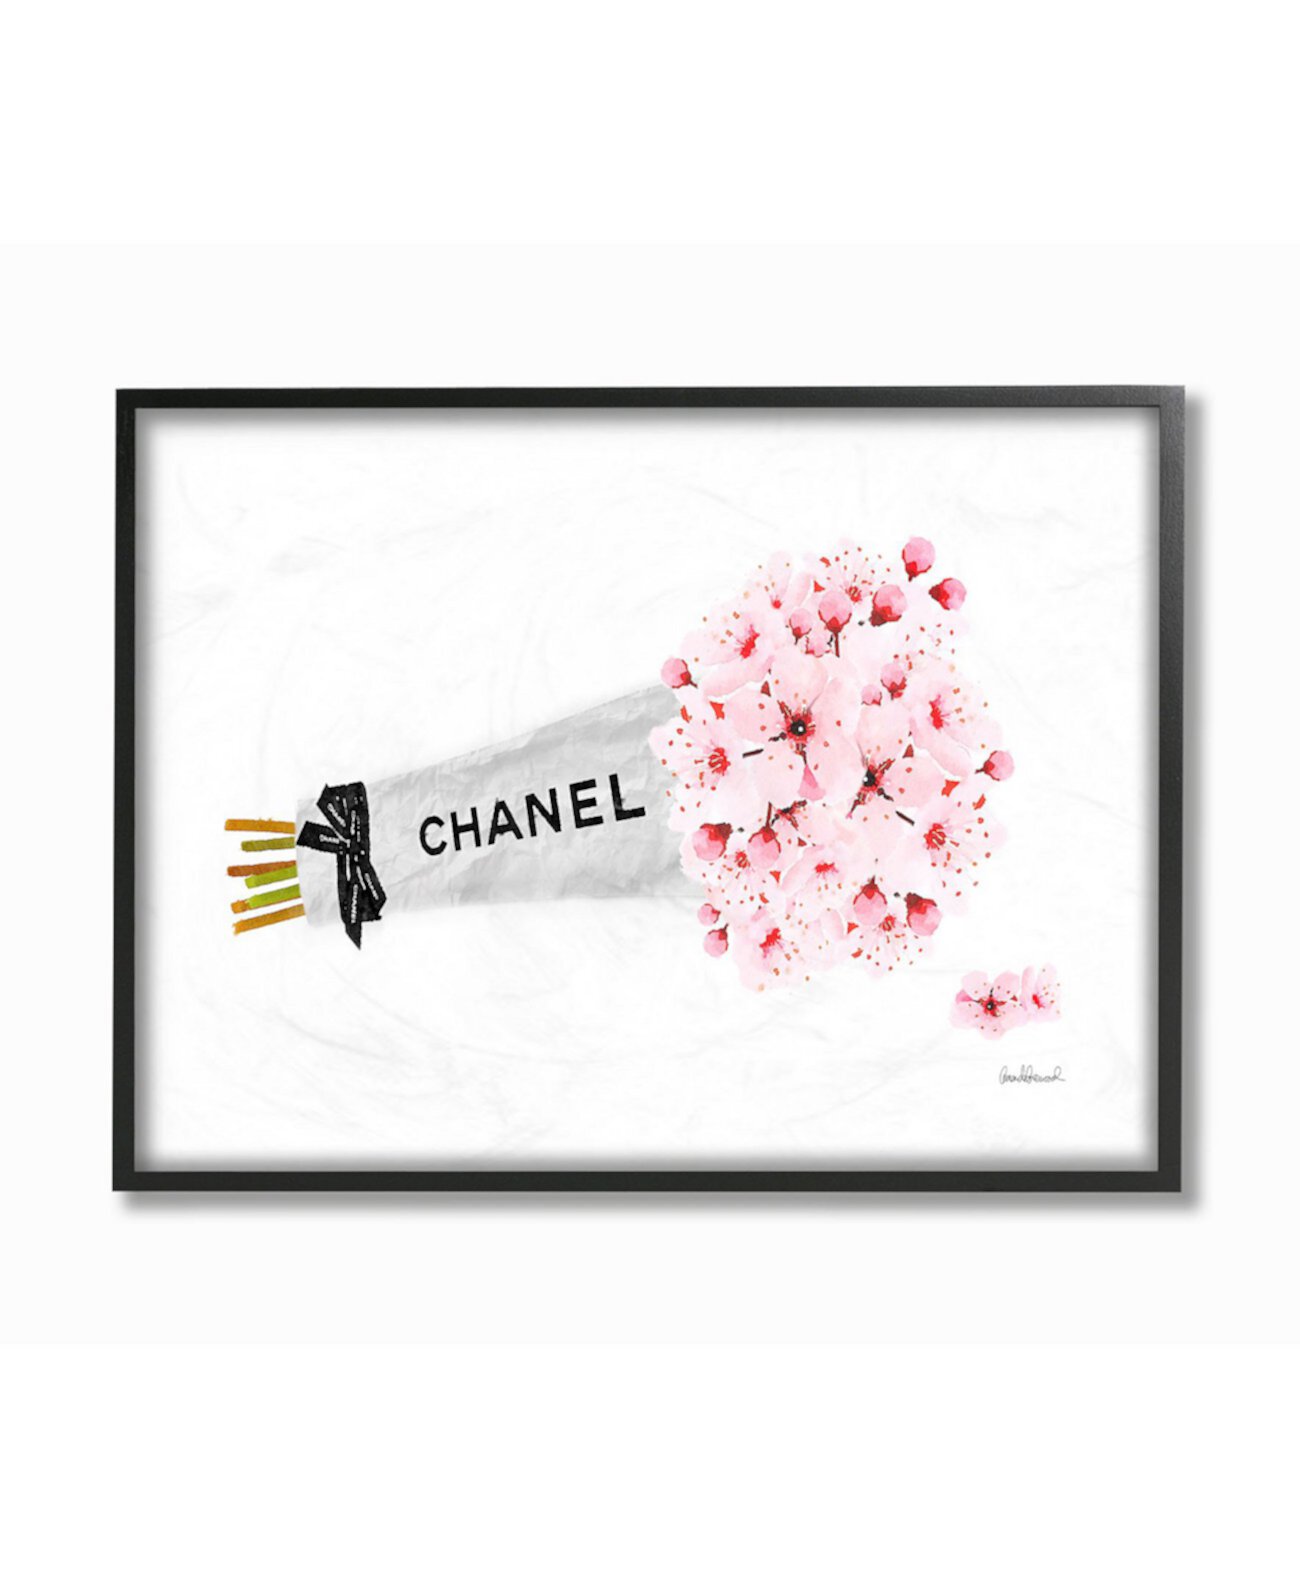 Текстурированное искусство в рамке Fashion Chanel с цветами вишни в обертке, 24 дюйма (длина) x 30 дюймов (высота) Stupell Industries